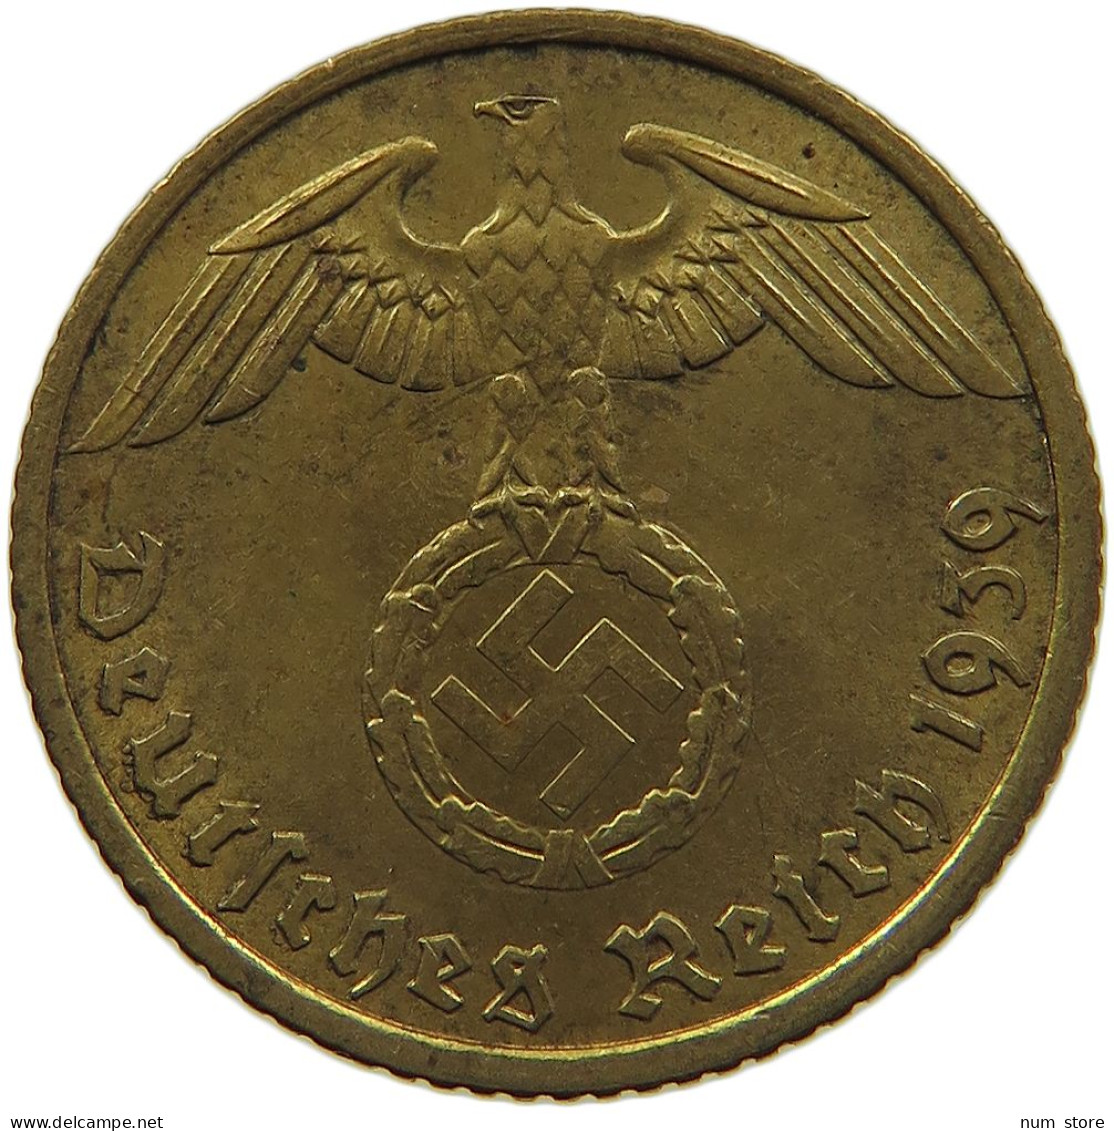 GERMANY 5 REICHSPFENNIG 1939 A #s091 0635 - 5 Reichspfennig